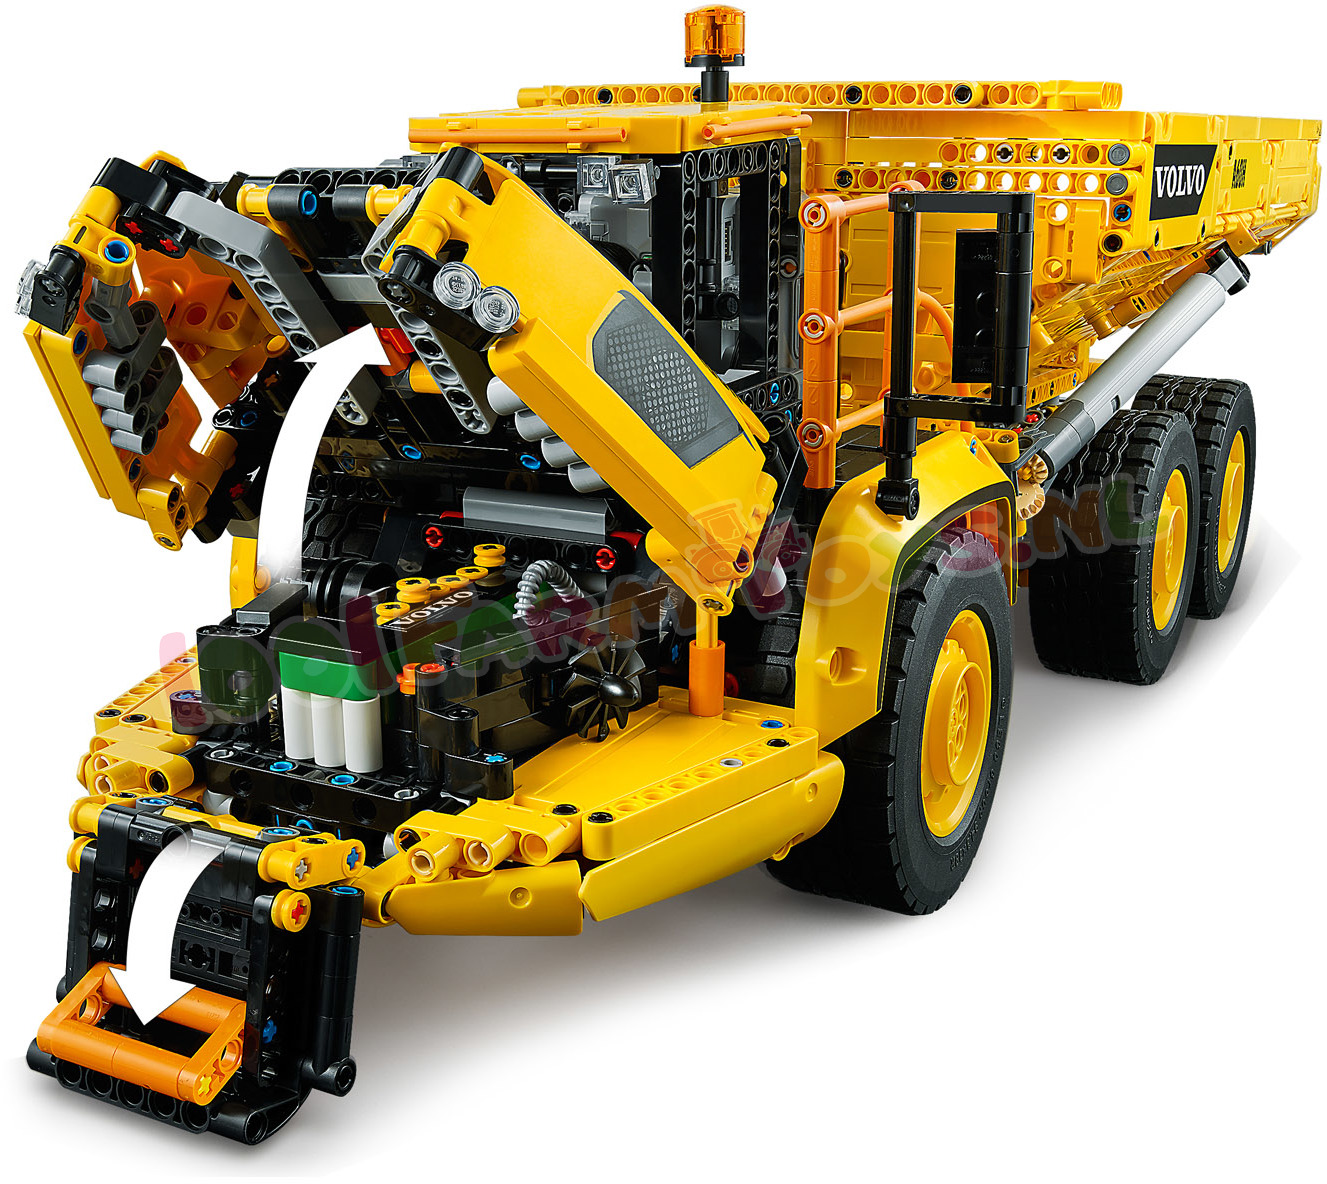 Vooraf Okkernoot Golven LEGO TECHNIC Volvo 6x6 Truck Kieptrailer - 42114 - LEGO Technic - LEGO -  1001Farmtoys landbouwspeelgoed - LET OP dit product wordt niet meer  geproduceerd